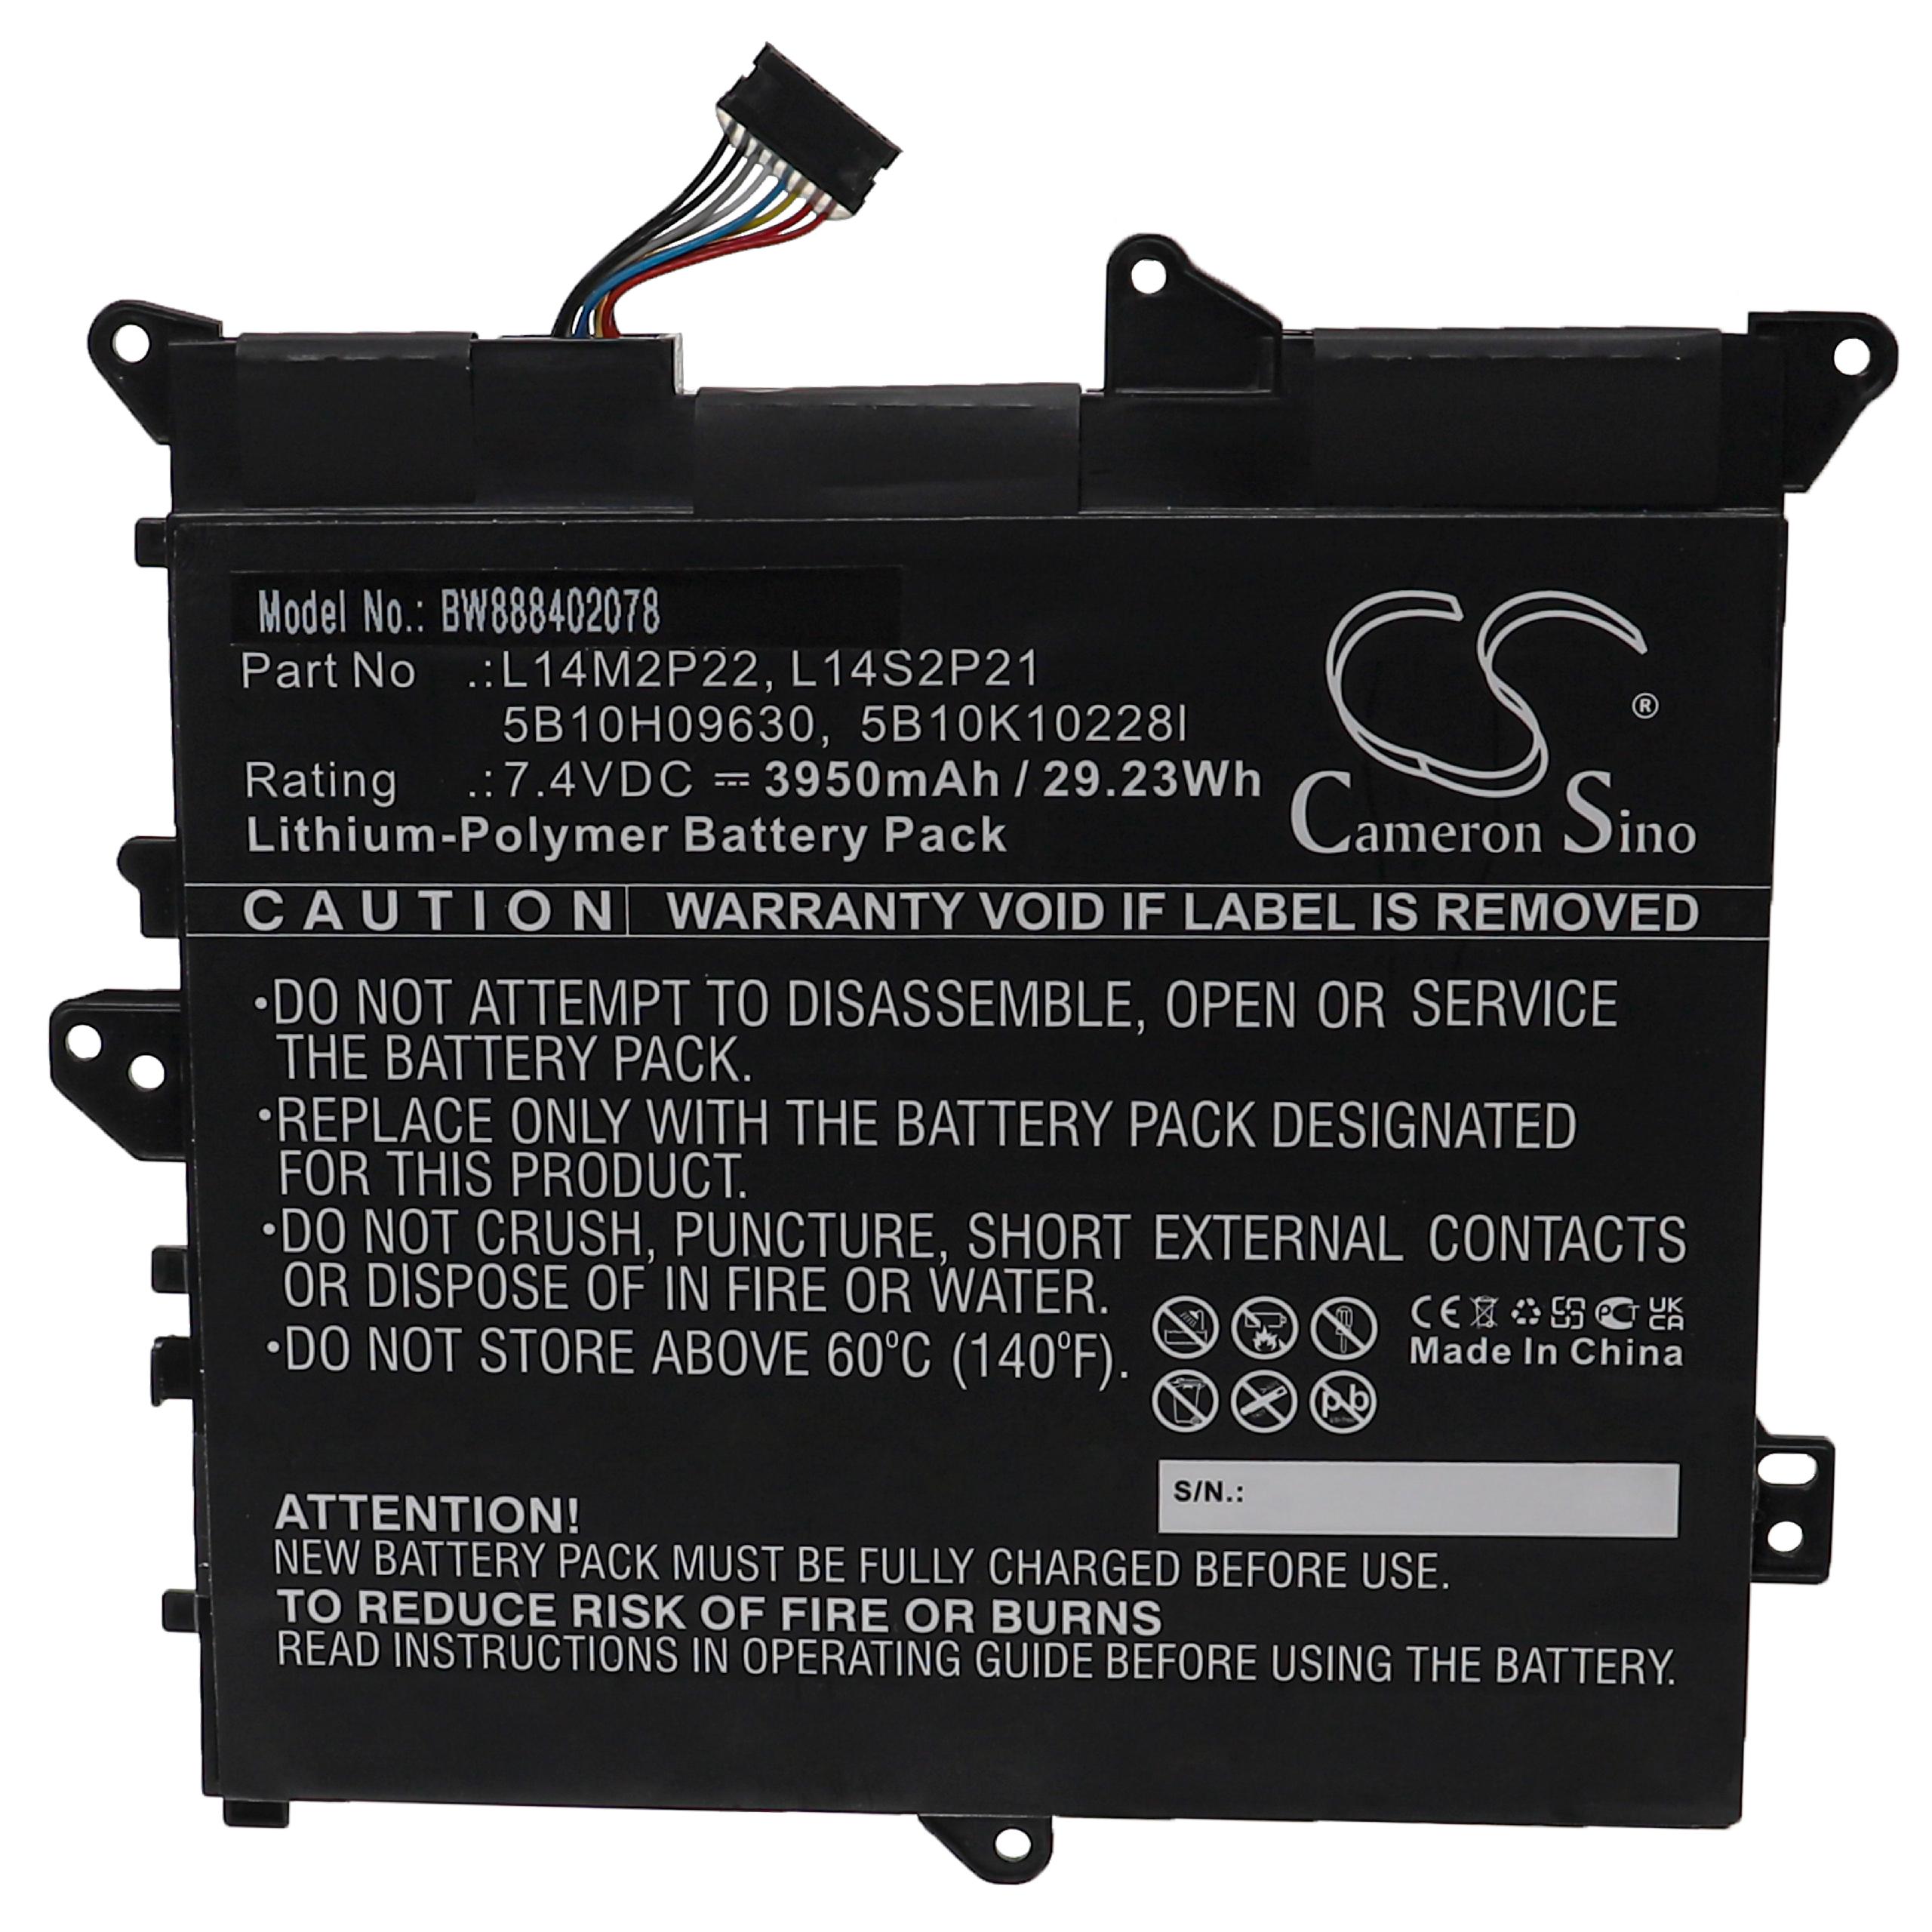 Akumulator do laptopa zamiennik Lenovo 5B10K10168, 5B10H11758, 5B10H09630, 5B10H09632 - 3950 mAh 7,4 V LiPo